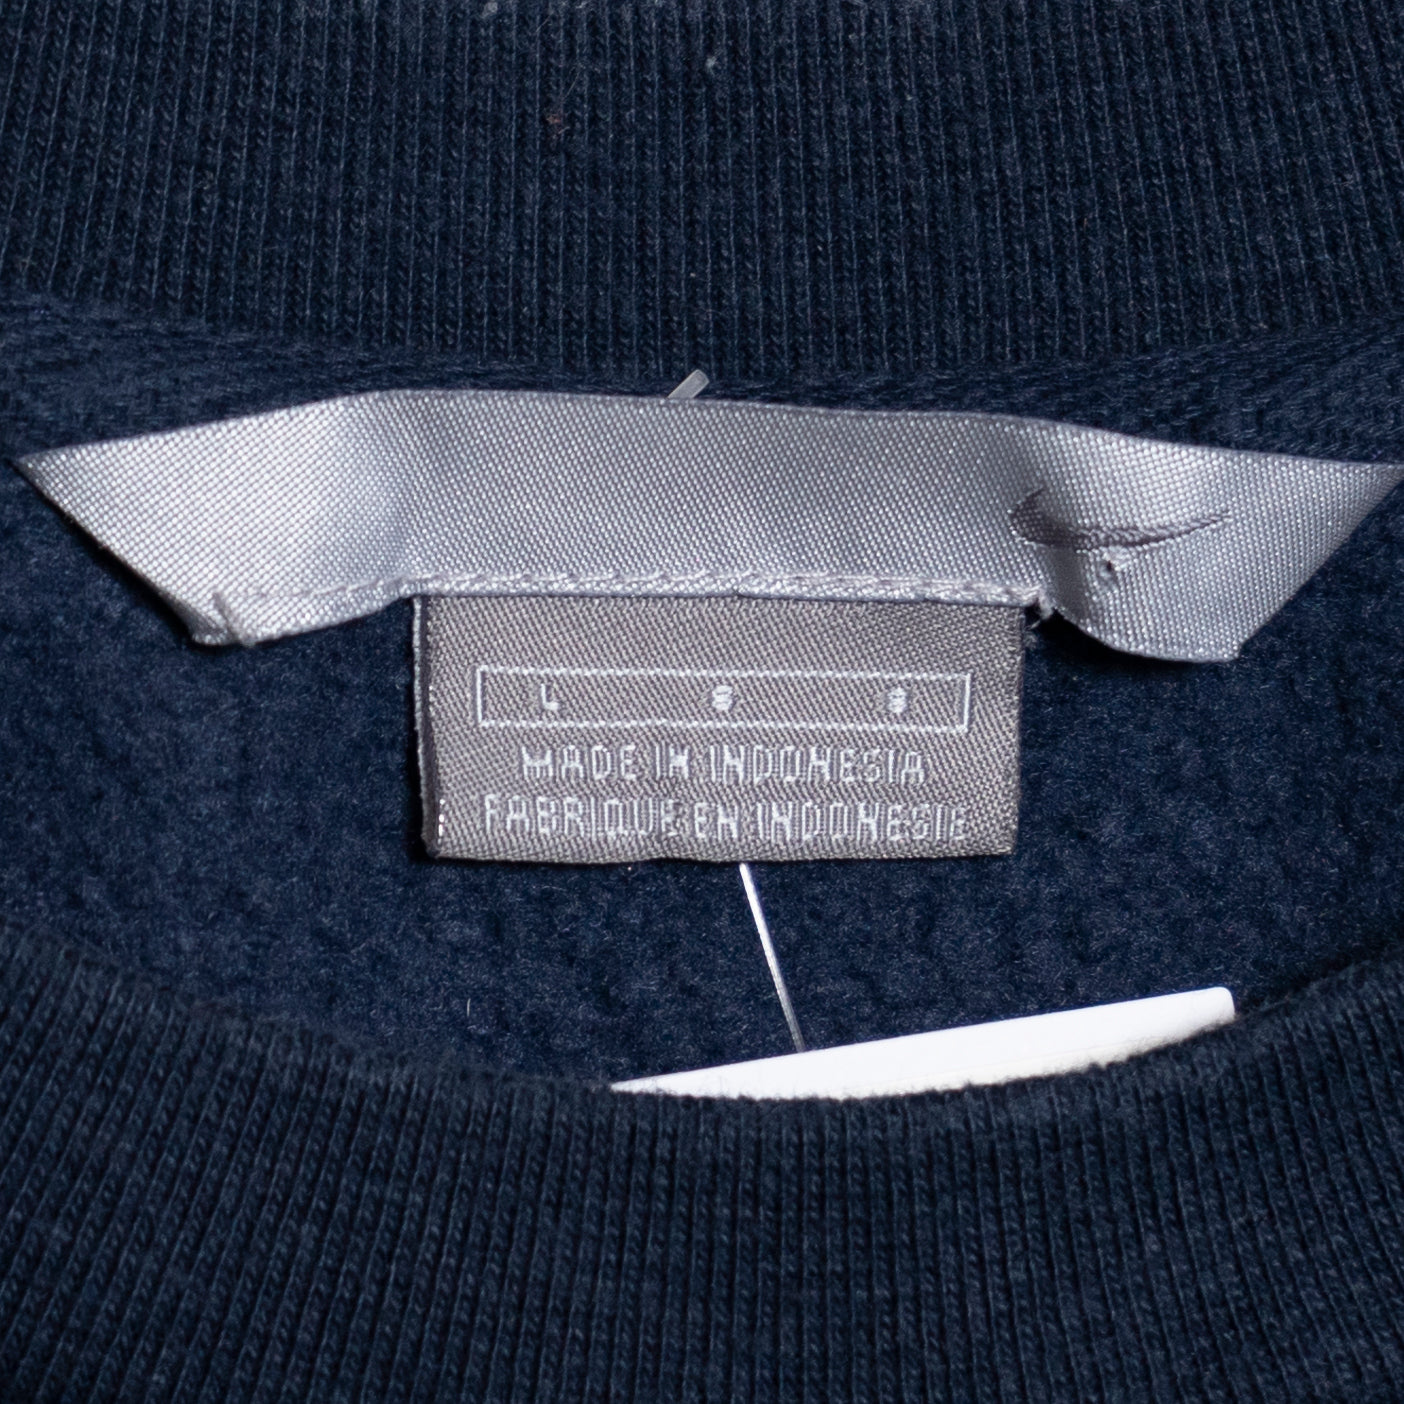 Nike Mini Swoosh Sweater, L